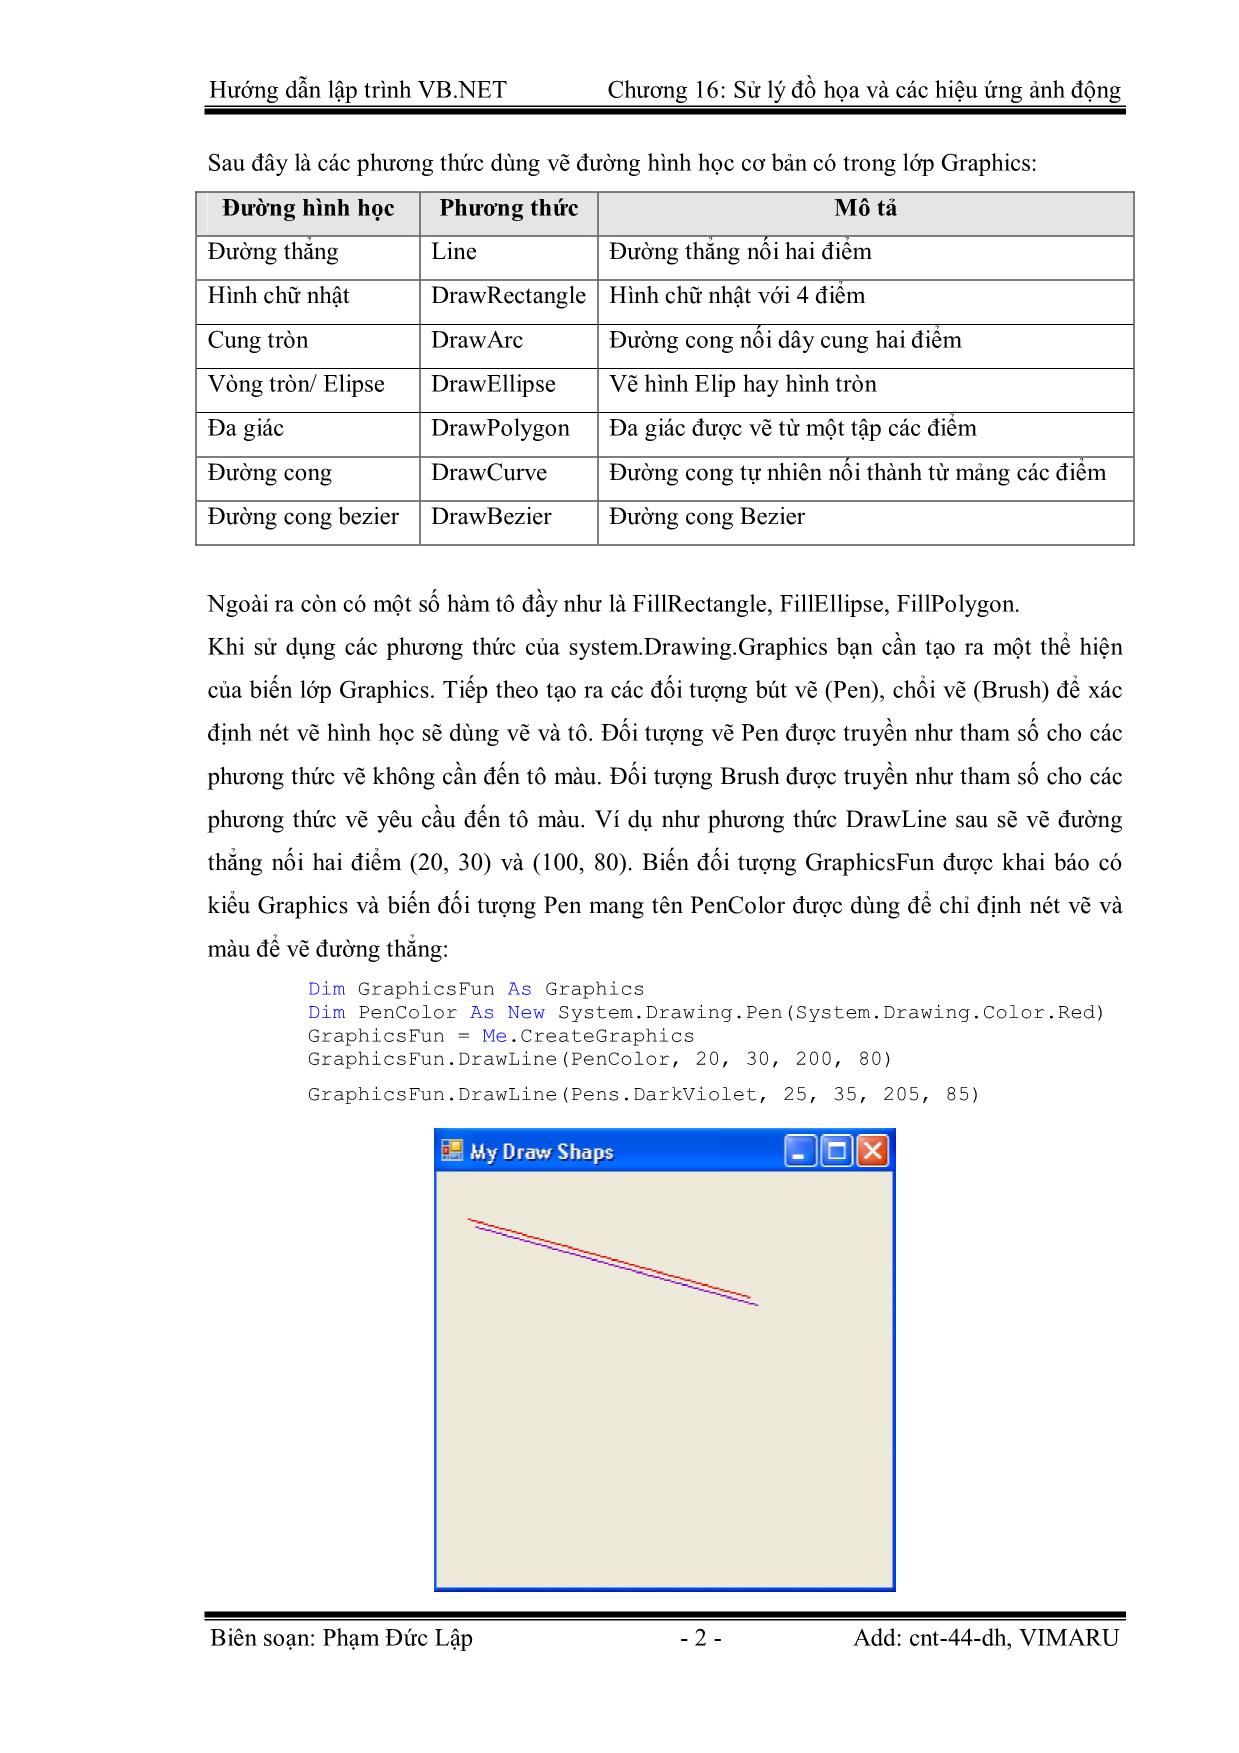 Giáo trình Hướng dẫn lập trình VB.NET - Chương 16: Xử lý đồ họa và các hiệu ứng ảnh động - Phạm Đức Lập trang 2